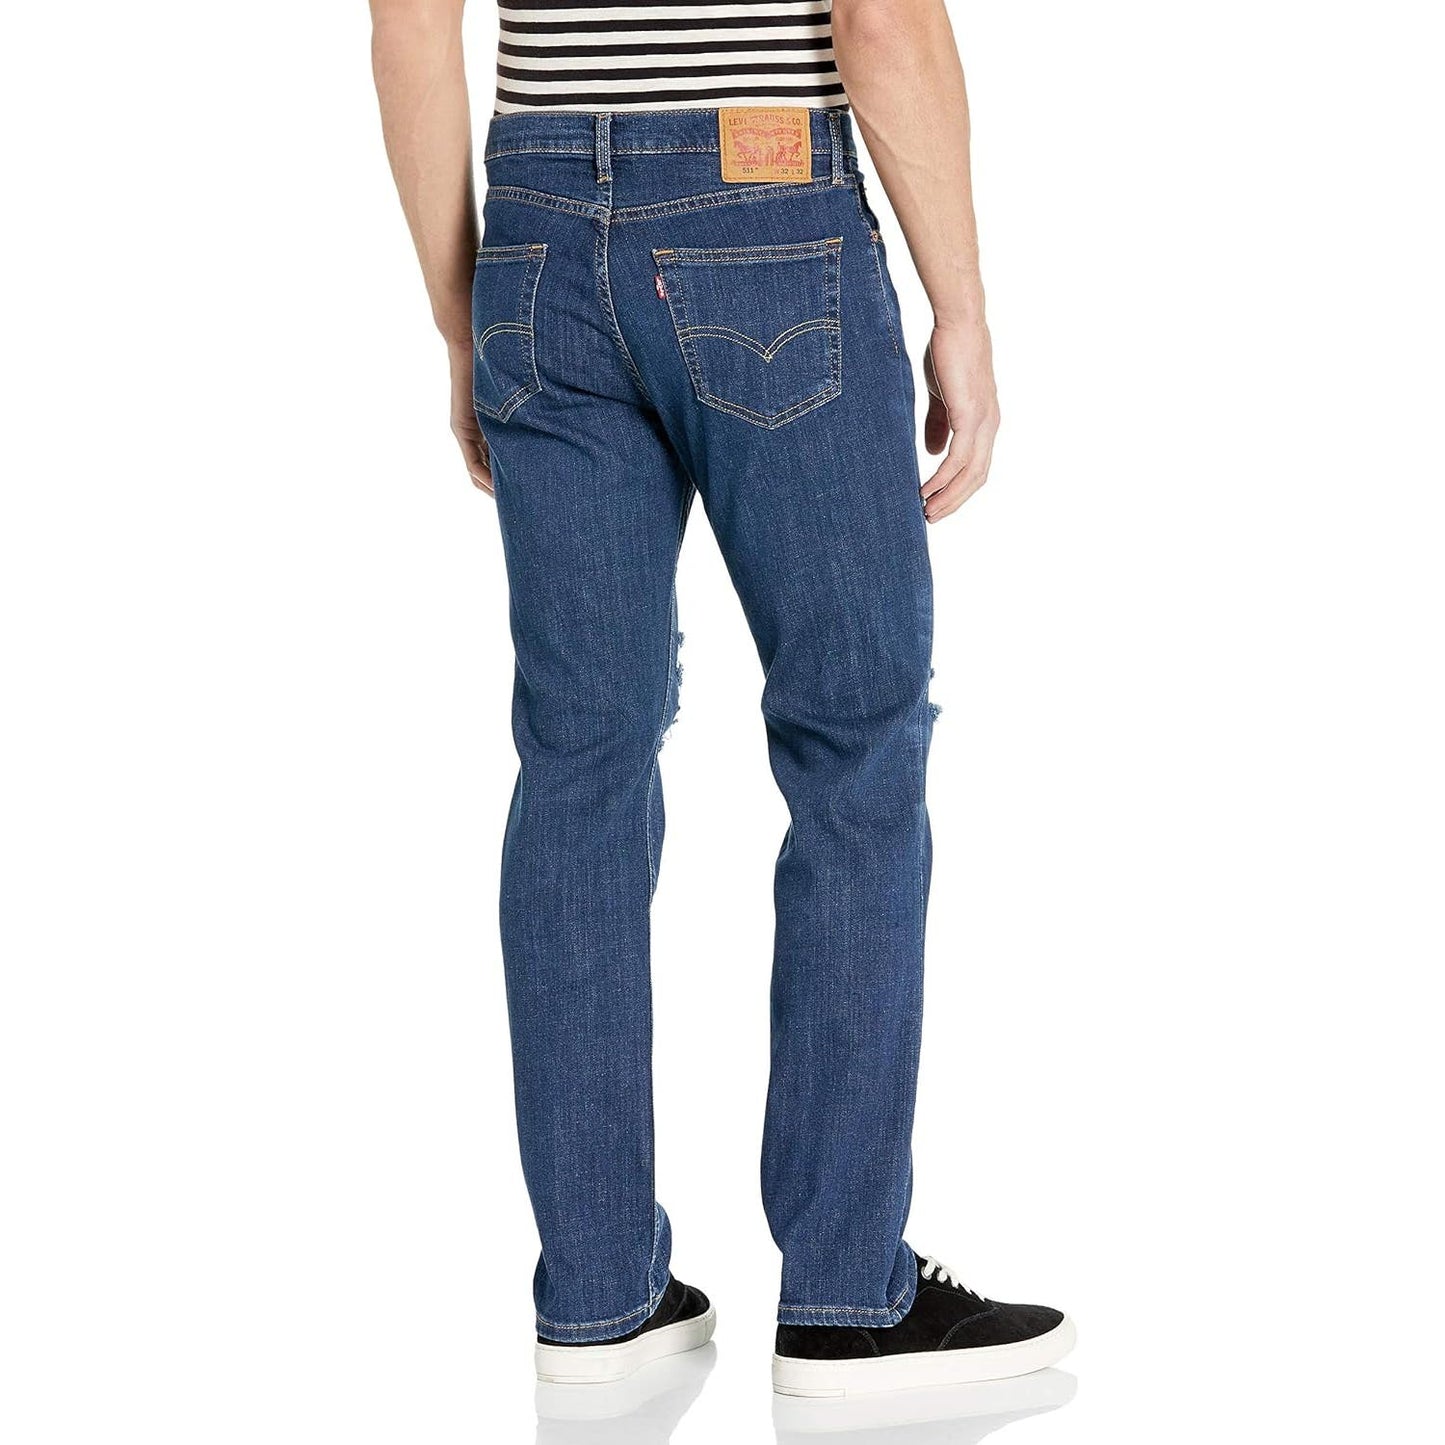 Levi's 511 Slim Fit Jeans, "Myers Dust Dx", Blue, Size 30x32